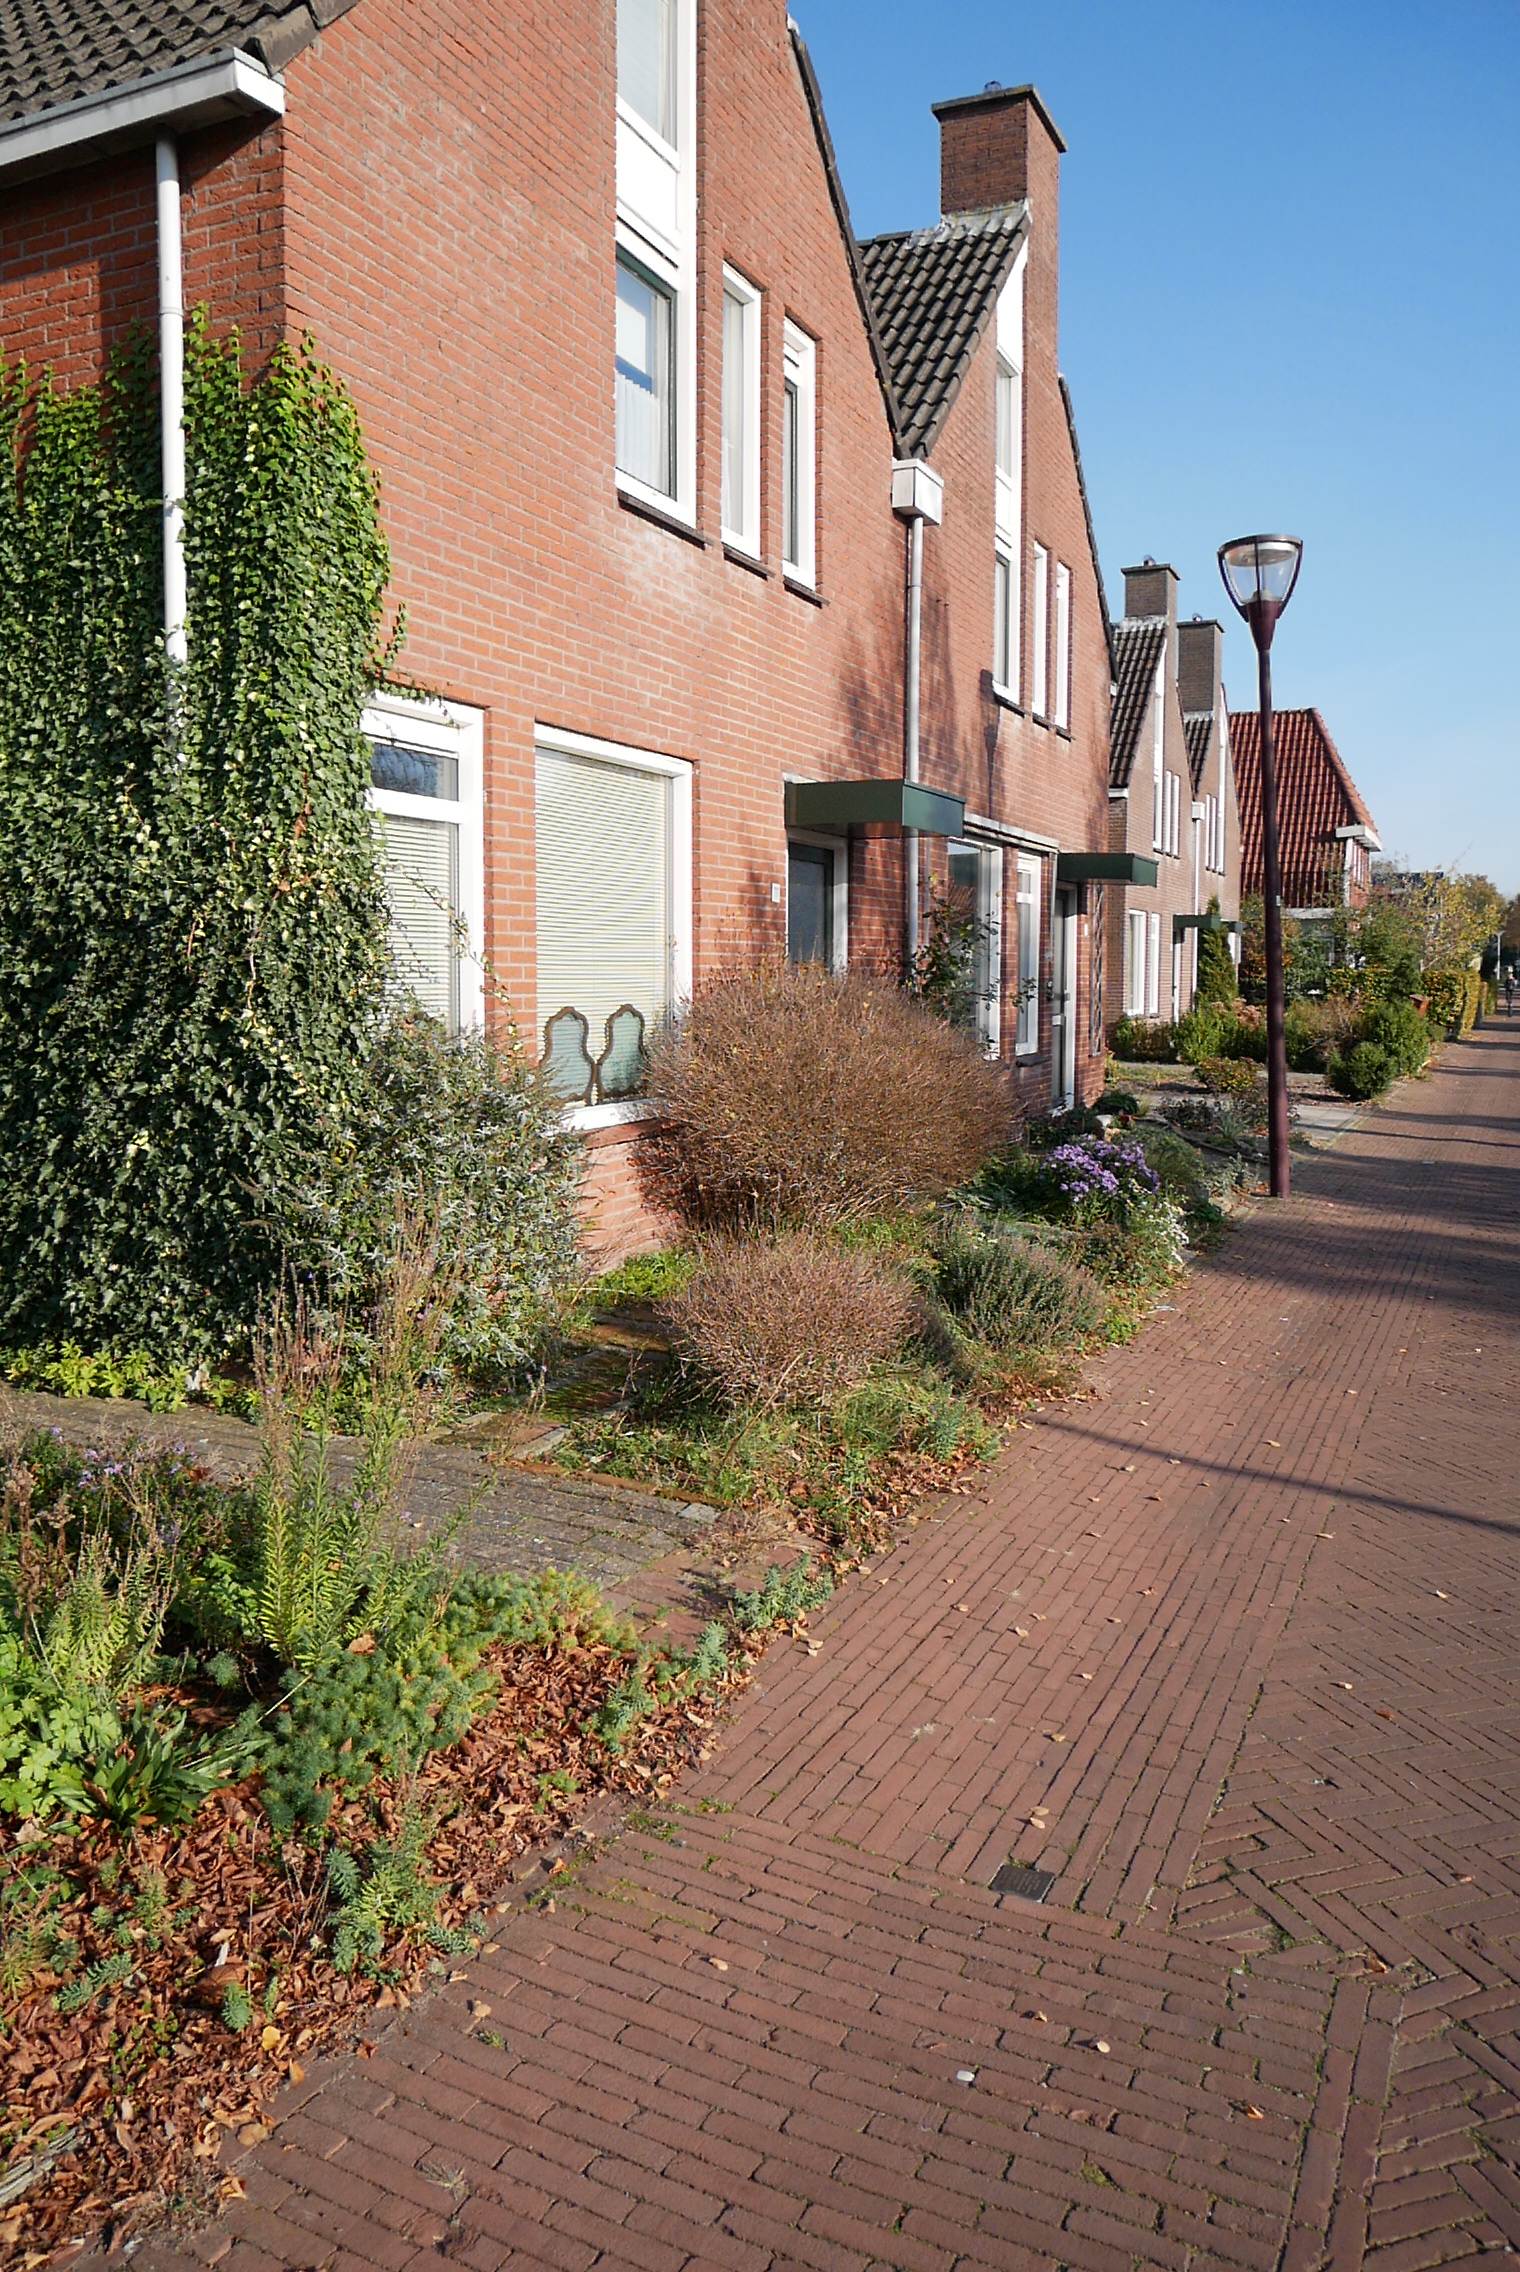 Straat in Muntendam met struikelstenen in de stoep voor de huizen.